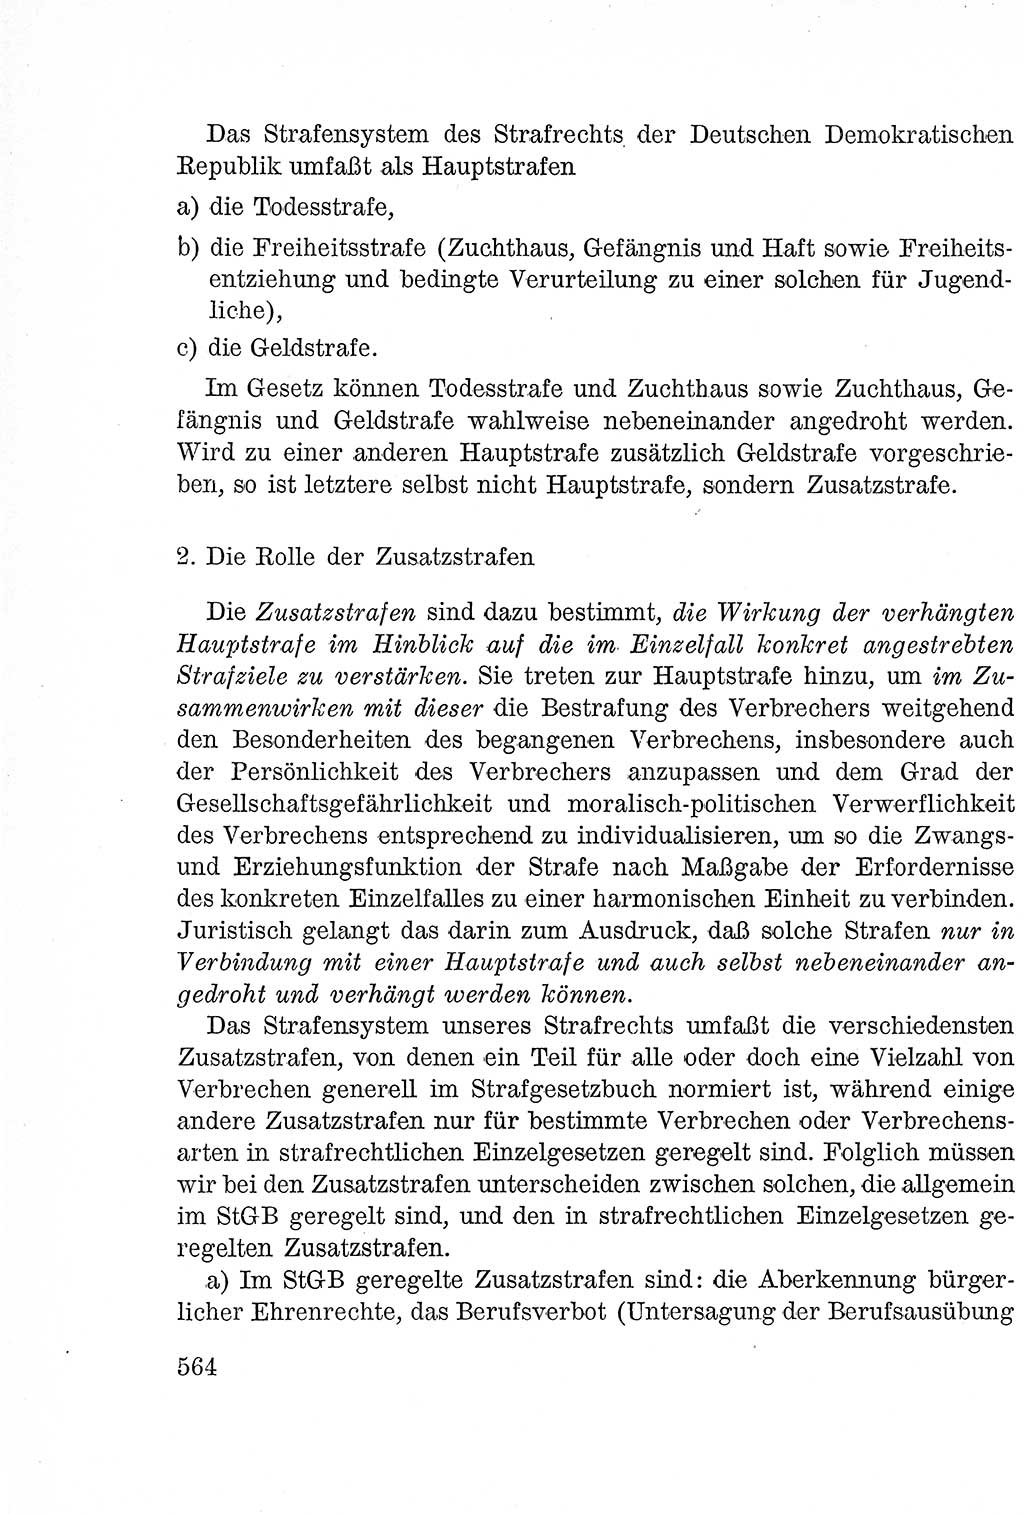 Lehrbuch des Strafrechts der Deutschen Demokratischen Republik (DDR), Allgemeiner Teil 1957, Seite 564 (Lb. Strafr. DDR AT 1957, S. 564)